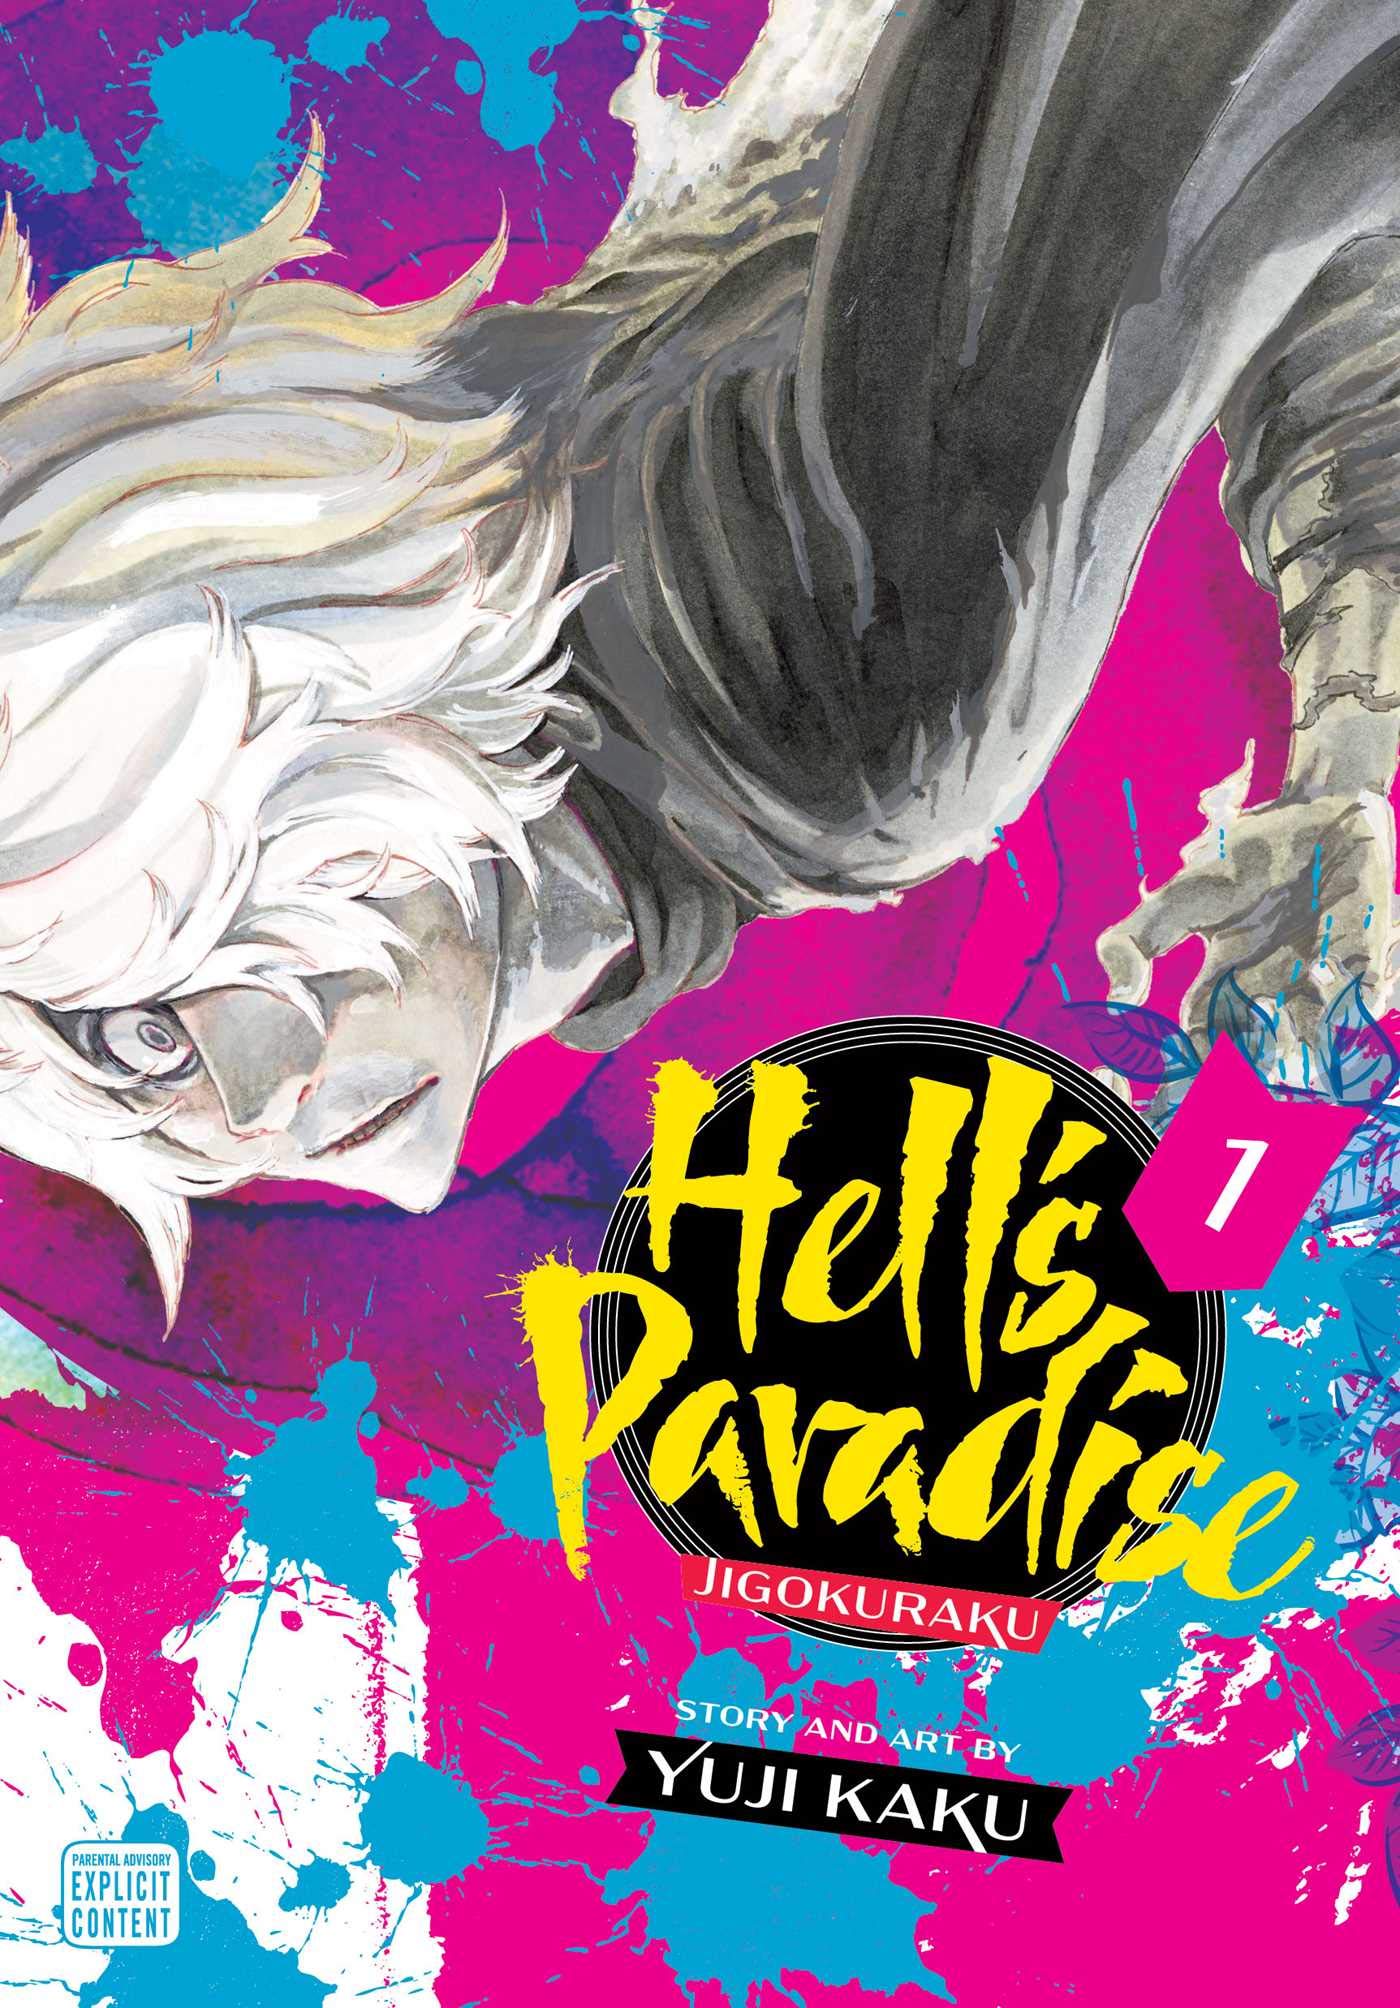 Hell's Paradise: Jigokuraku Review (spoilers) — Jackson P. Brown